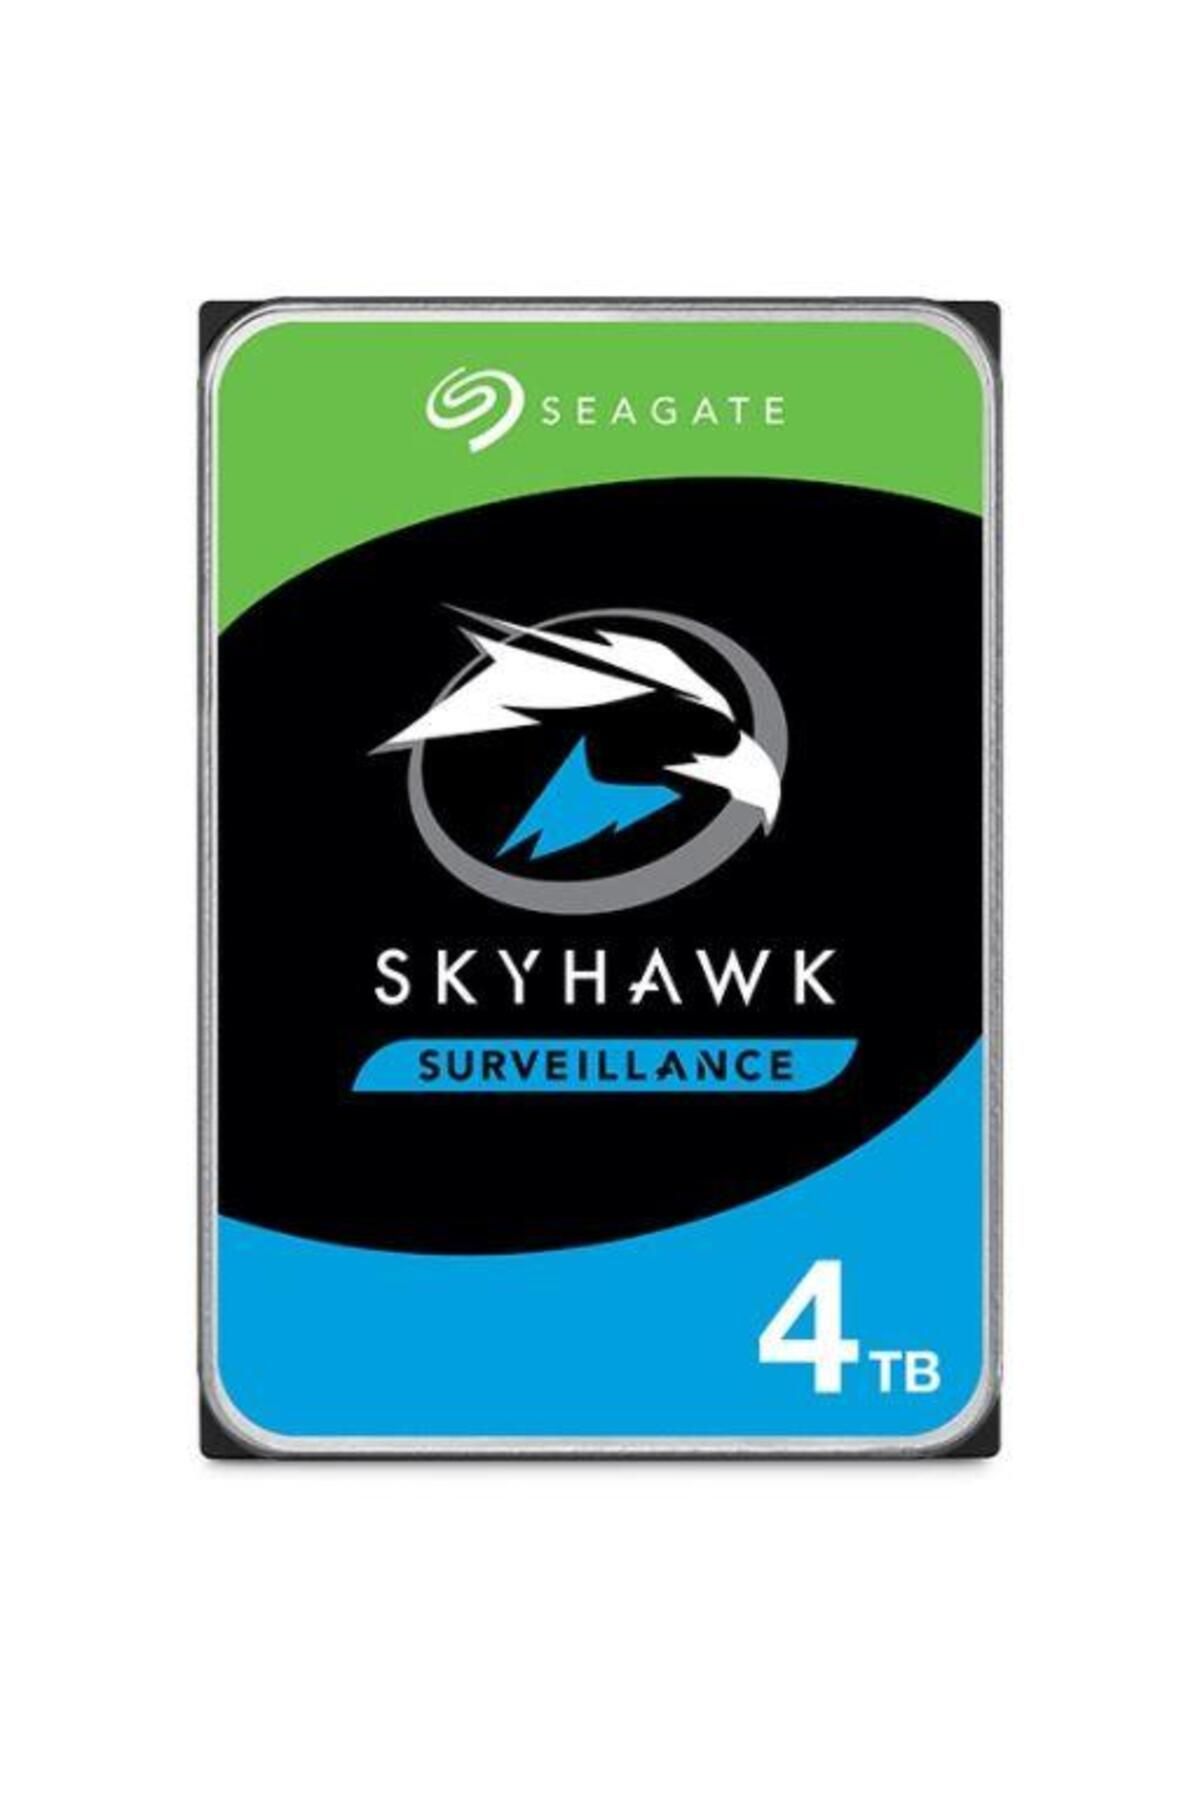 Seagate St4000vx013 Skyhawk 3.5" 4tb 5400rpm 256mb Sata 7/24 Harddisk